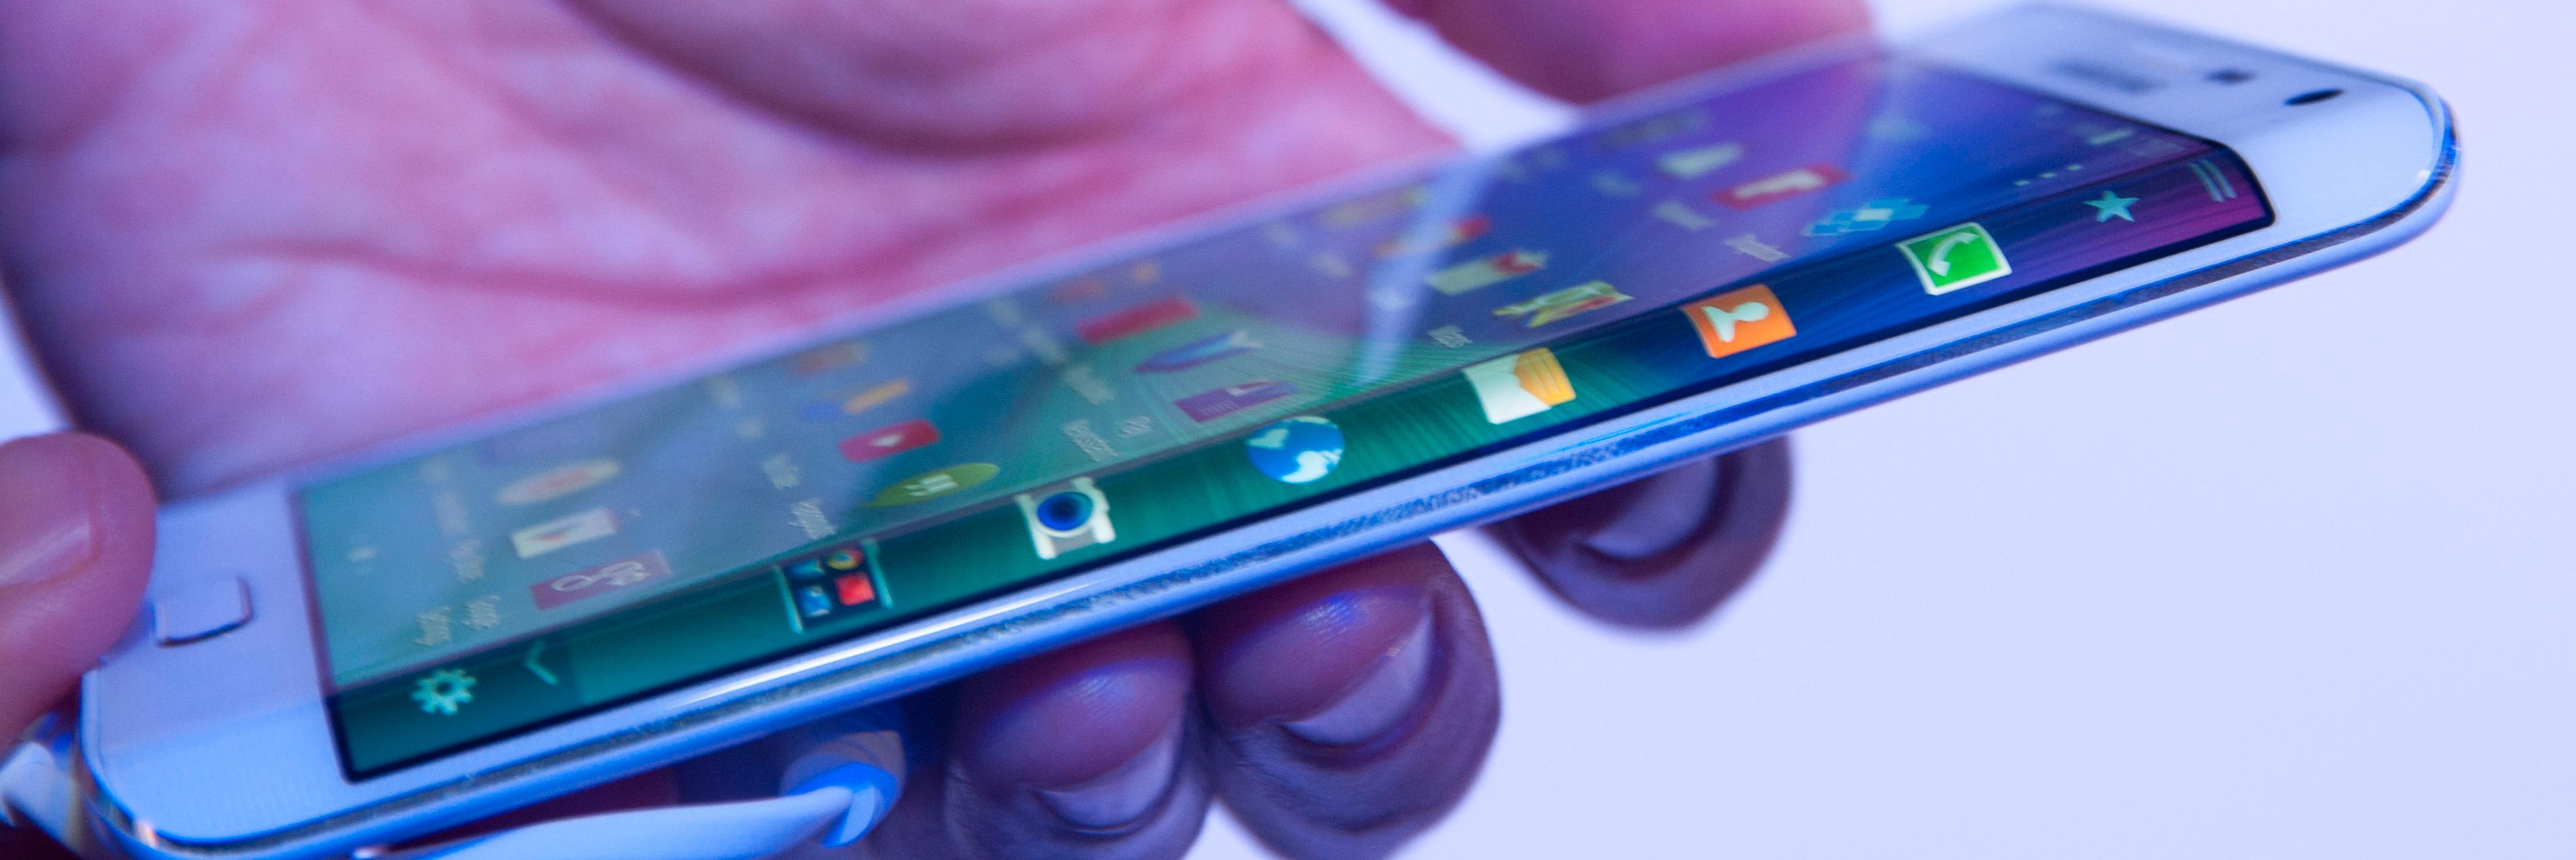 Galaxy Note Edge skal være hovedårsak til at Samsung setter utviklingen av bøyelige mobiler i høygir. Det hjelper nok også å vite at LG jakter på den samme milepælen.Foto: Finn Jarle Kvalheim, Tek.no